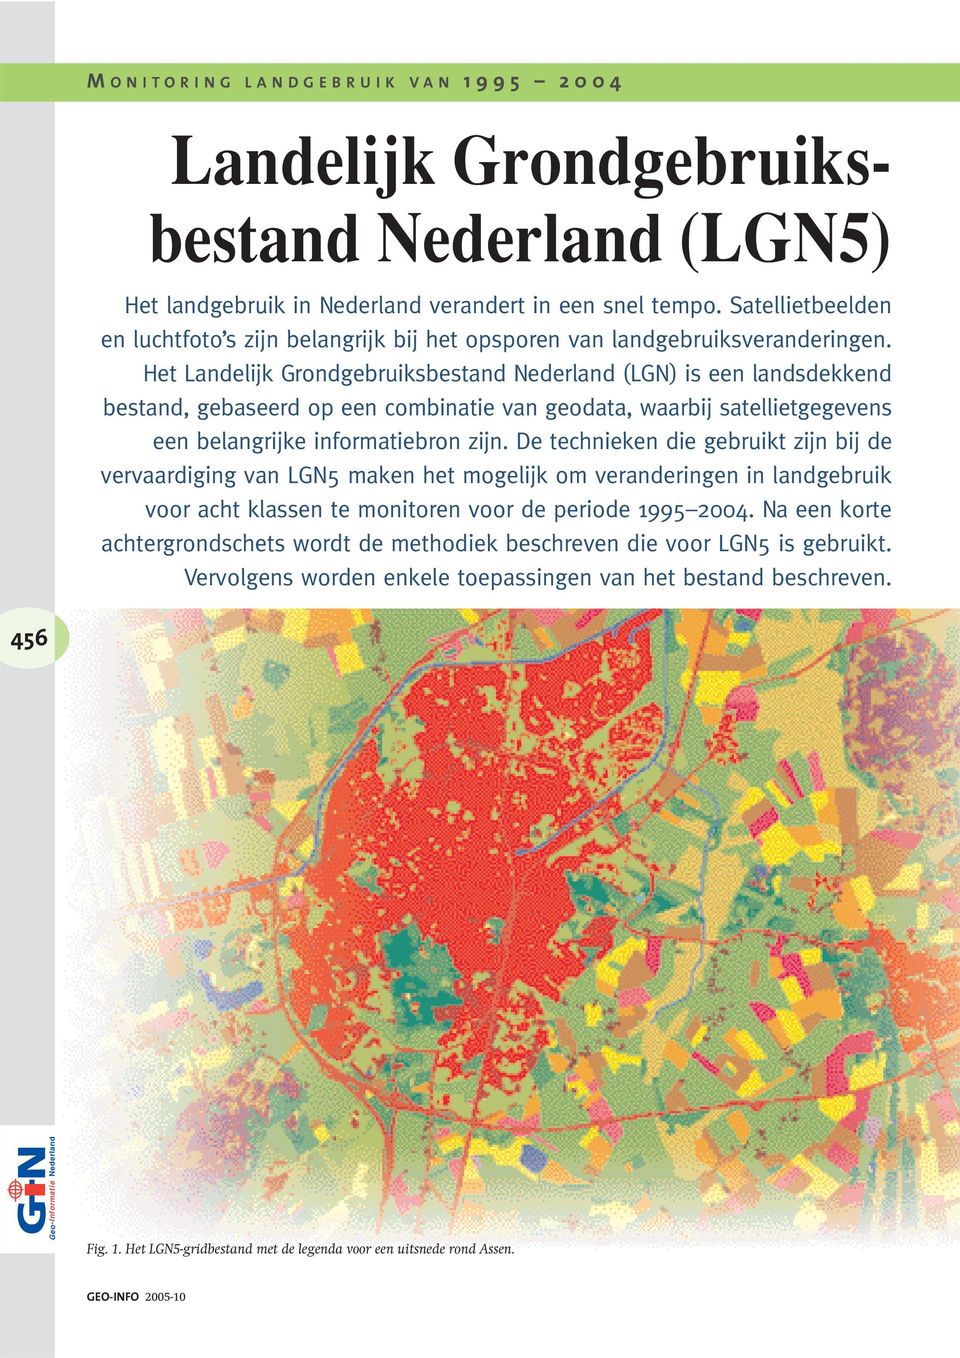 Het Landelijk Grondgebruiksbestand Nederland (LGN) is een landsdekkend bestand, gebaseerd op een combinatie van geodata, waarbij satellietgegevens een belangrijke informatiebron zijn.